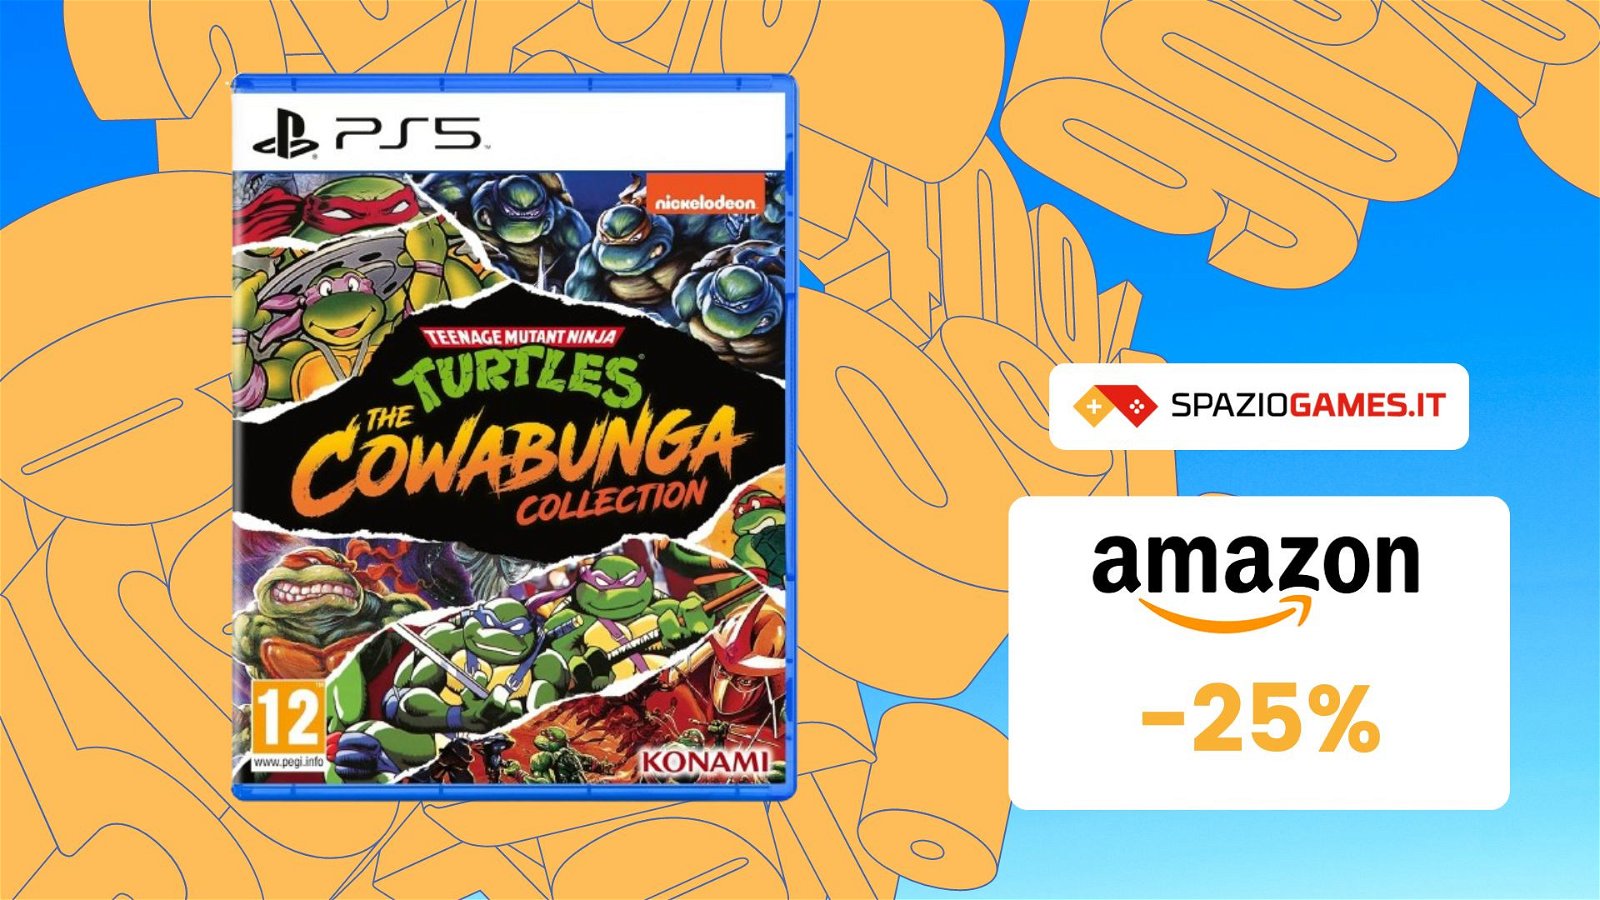 Rivivi le gesta delle Tartarughe Ninja in TMNT: The Cowabunga Collection per PS5! Ora a SOLI 30€!